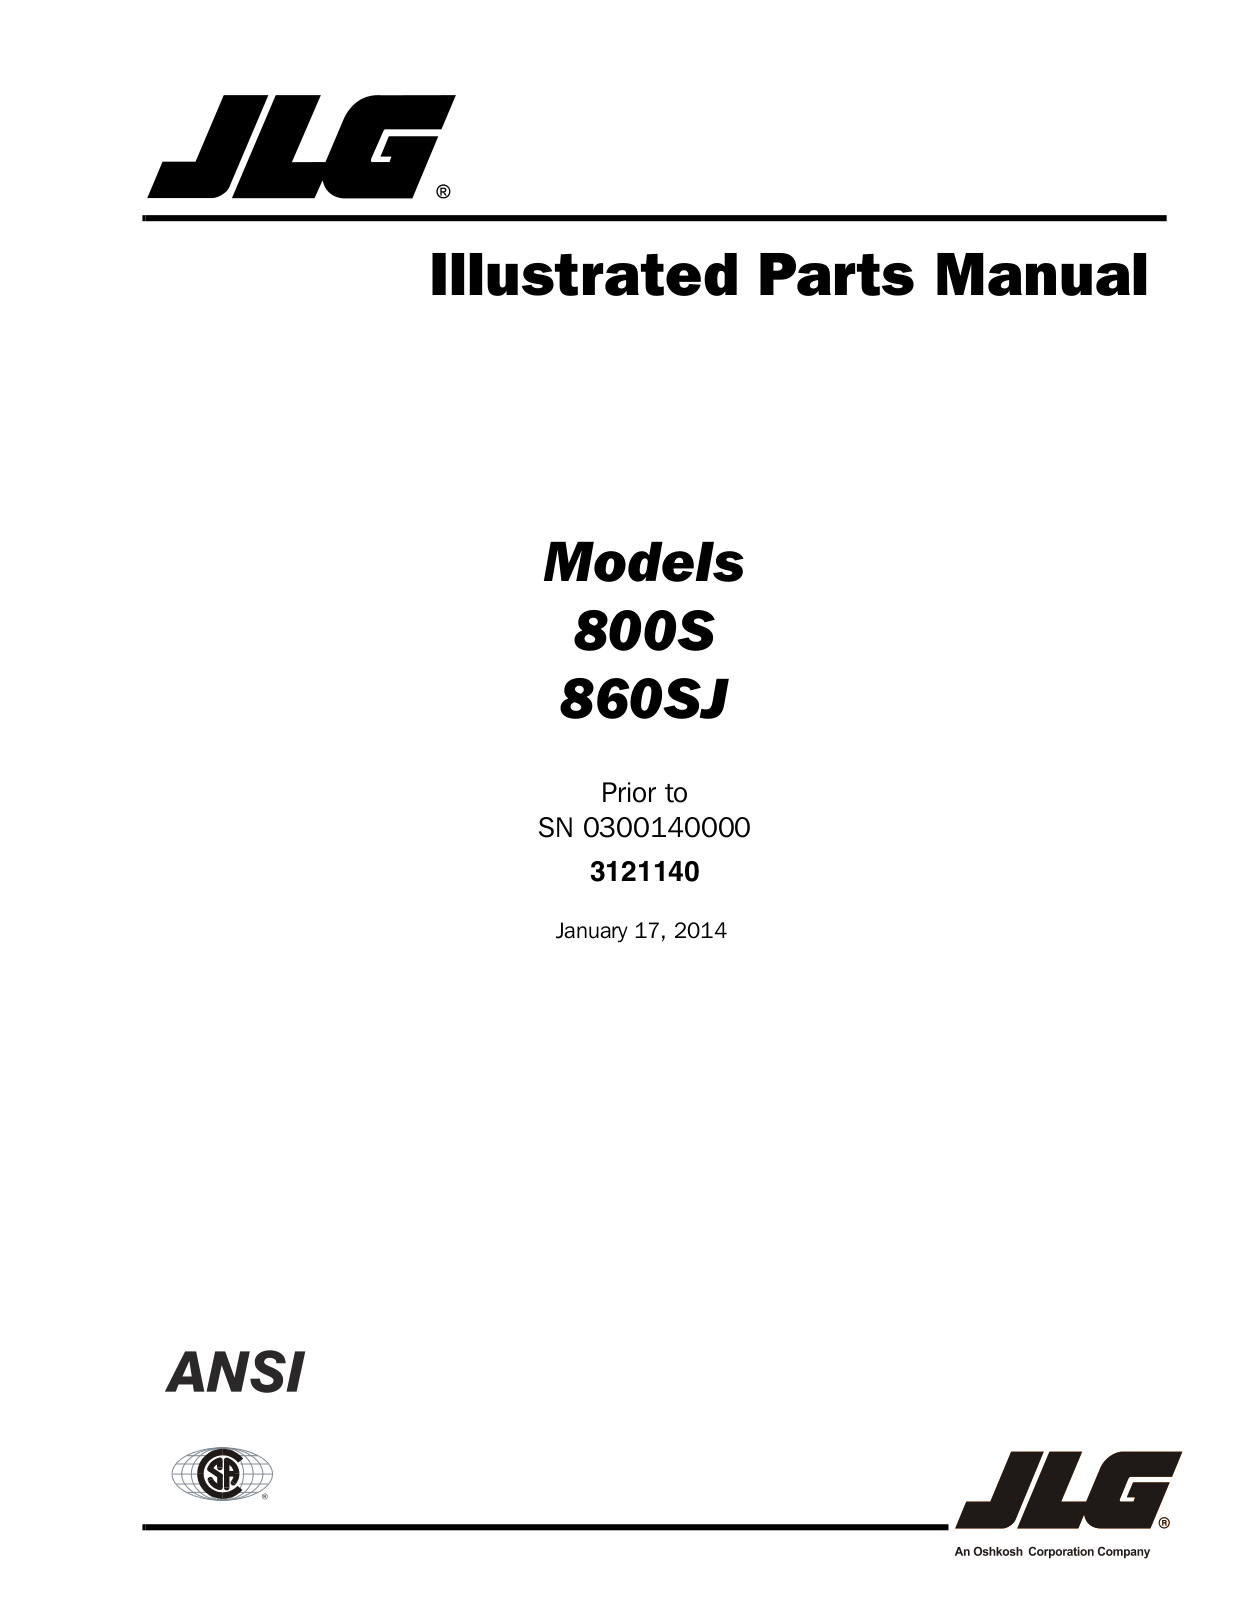 JLG 860SJ Parts Manual